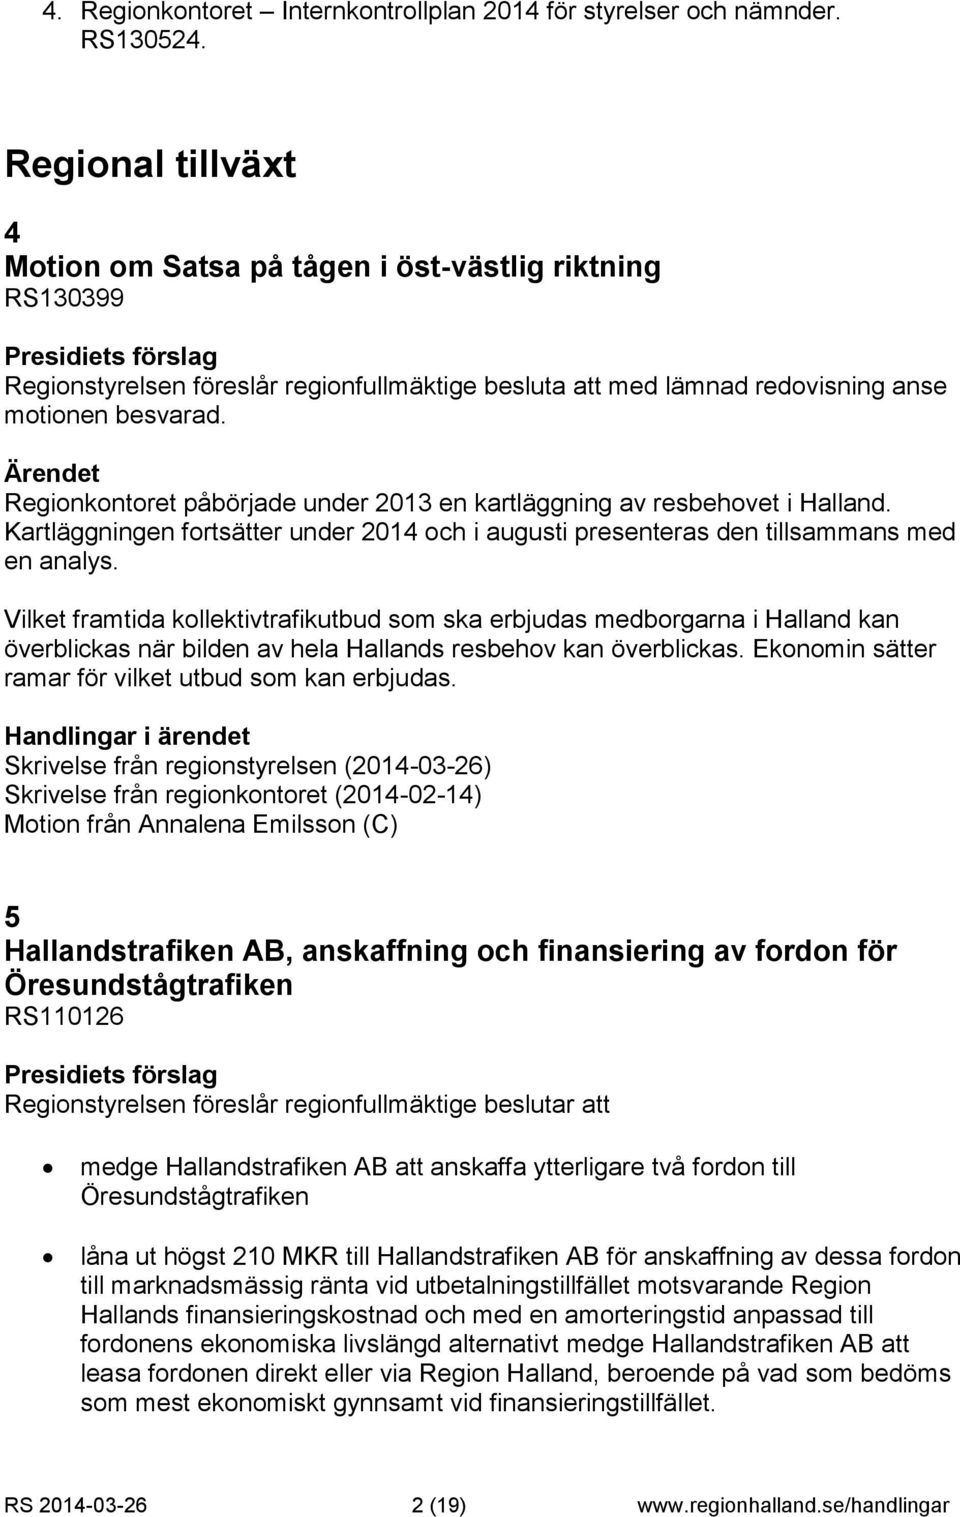 Regionkontoret påbörjade under 2013 en kartläggning av resbehovet i Halland. Kartläggningen fortsätter under 2014 och i augusti presenteras den tillsammans med en analys.